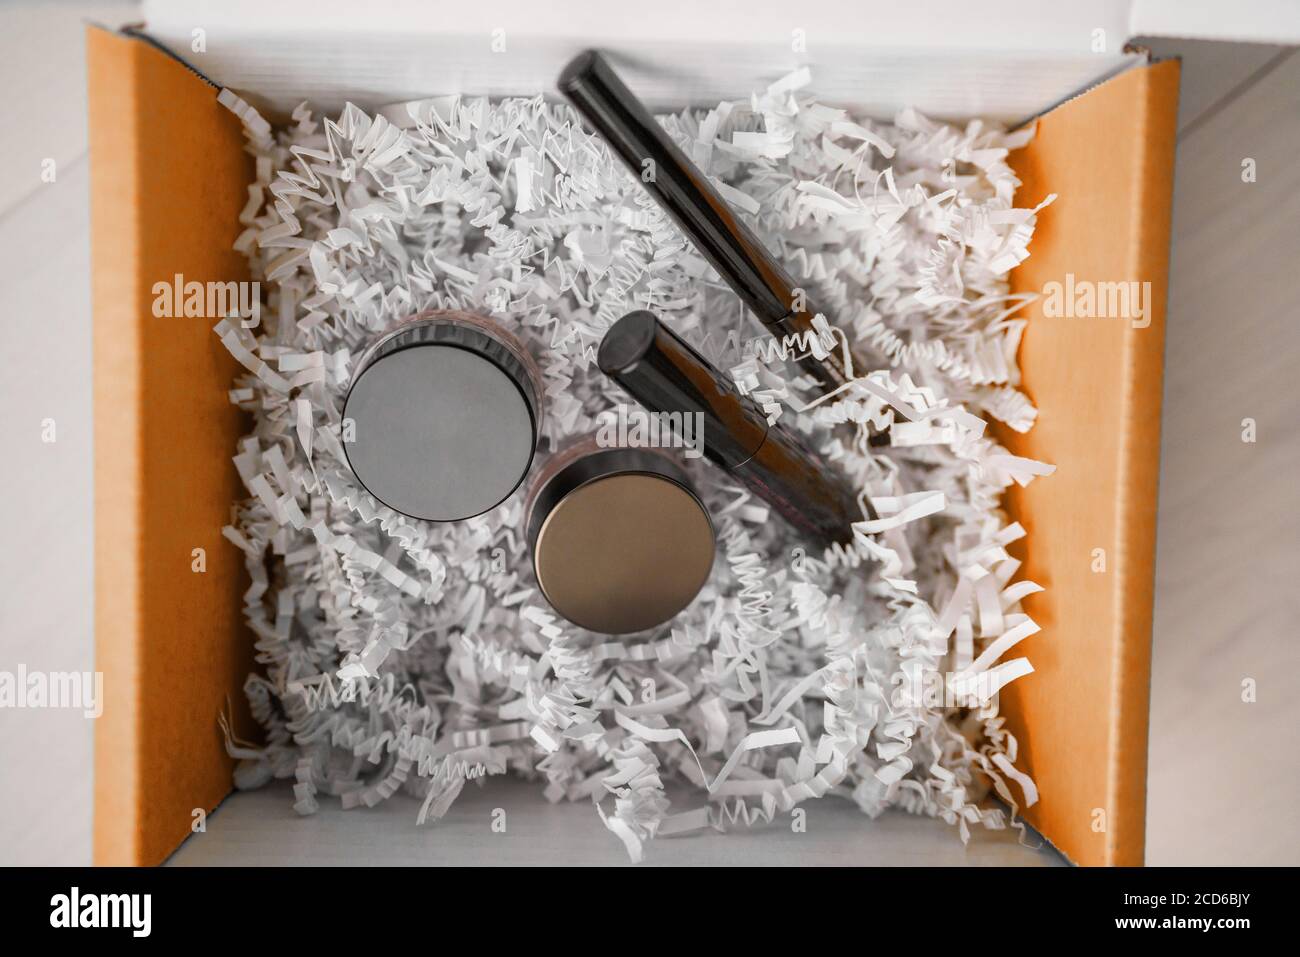 https://c8.alamy.com/compit/2cd6bjy/prodotti-di-trucco-scatola-di-consegna-in-linea-di-acquisto-a-casa-scatola-di-regalo-che-contiene-mascara-eyeliner-crema-di-ombretto-per-arrossire-o-occultare-2cd6bjy.jpg